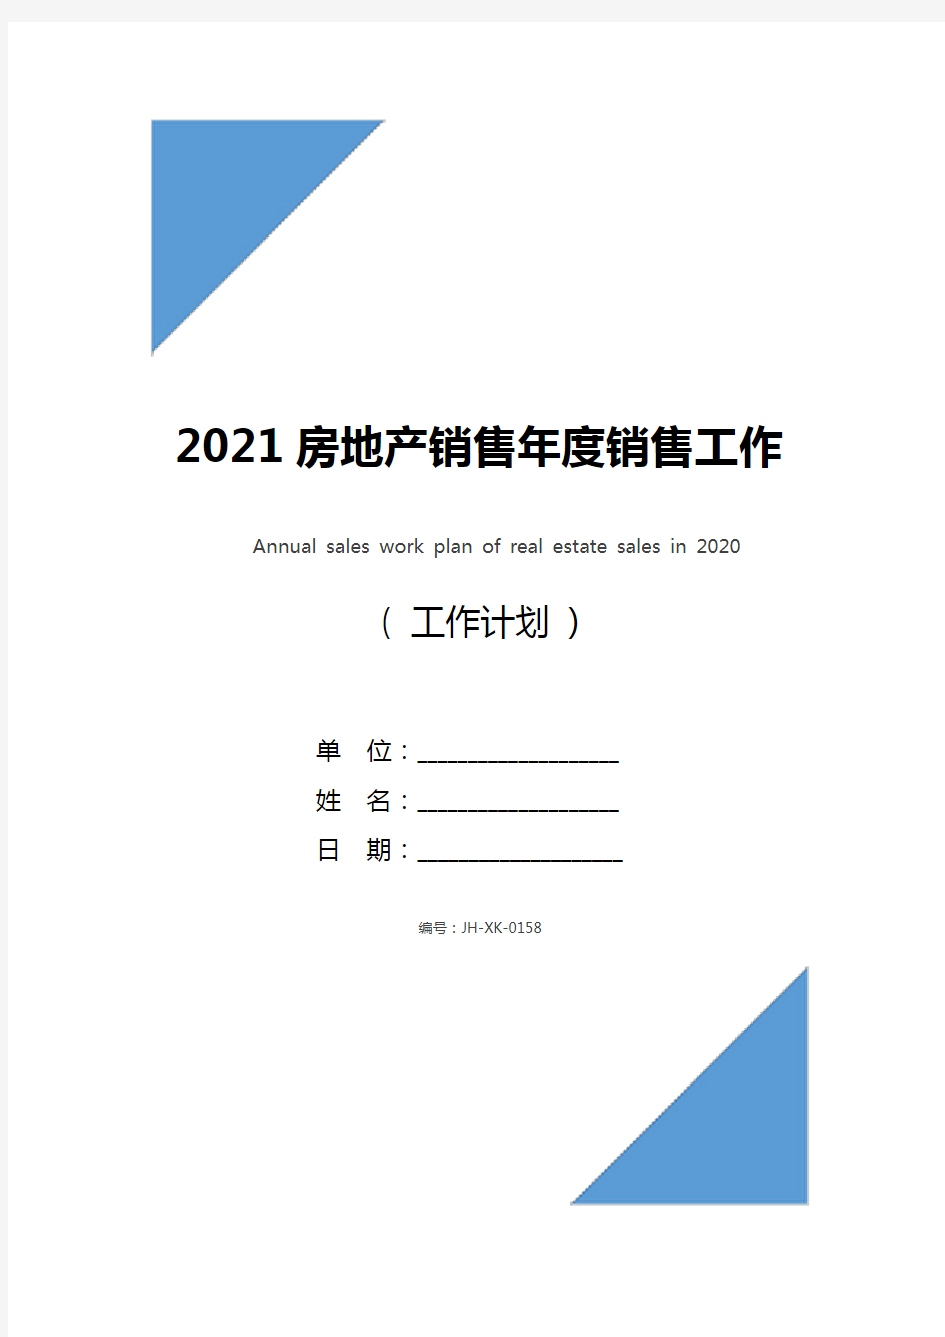 2021房地产销售年度销售工作计划(通用版)